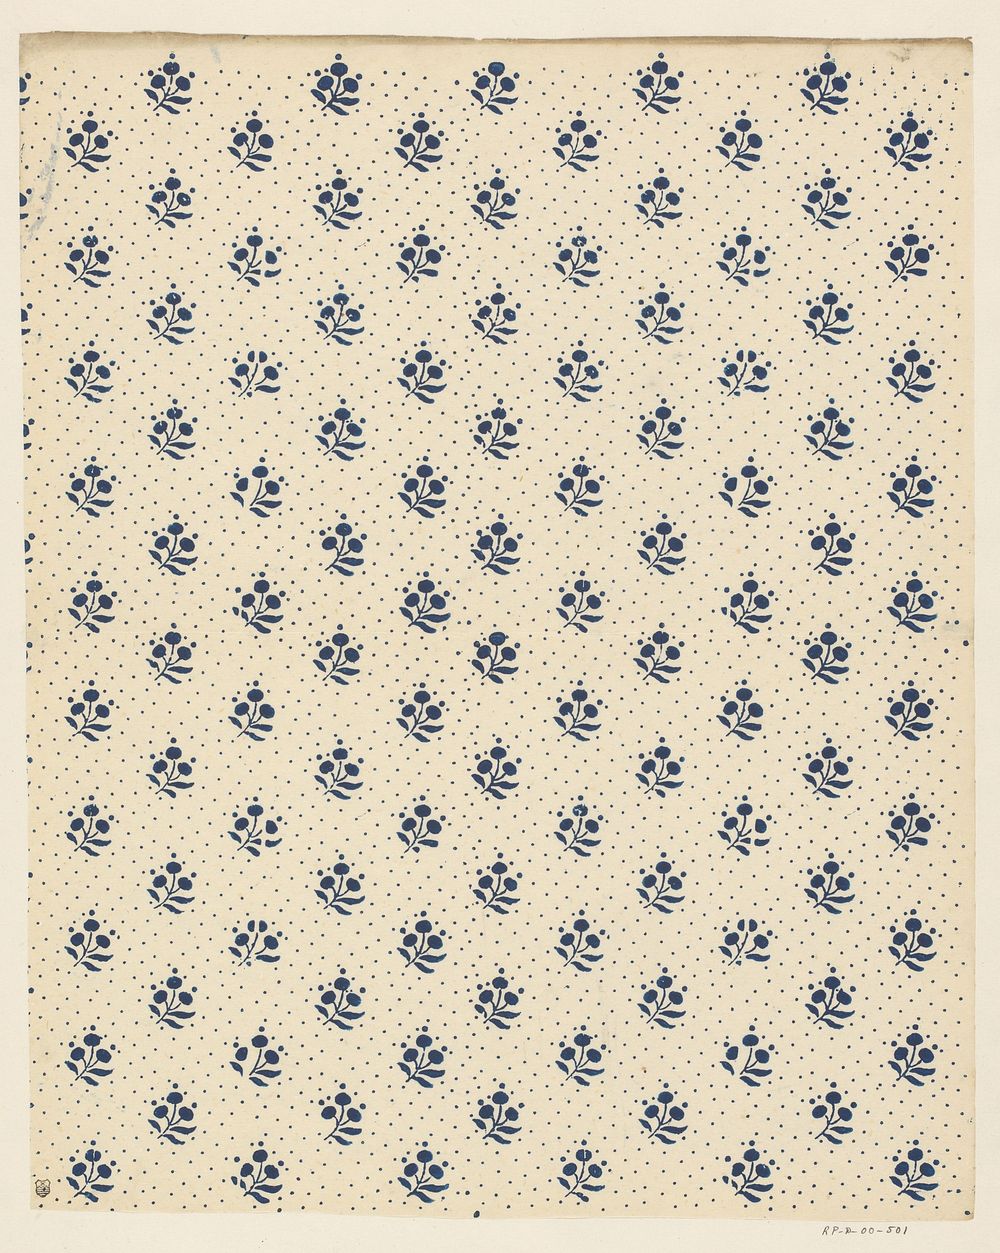 Blad met strooipatroon van bloemmotief met puntenfond (1800 - 1900) by anonymous